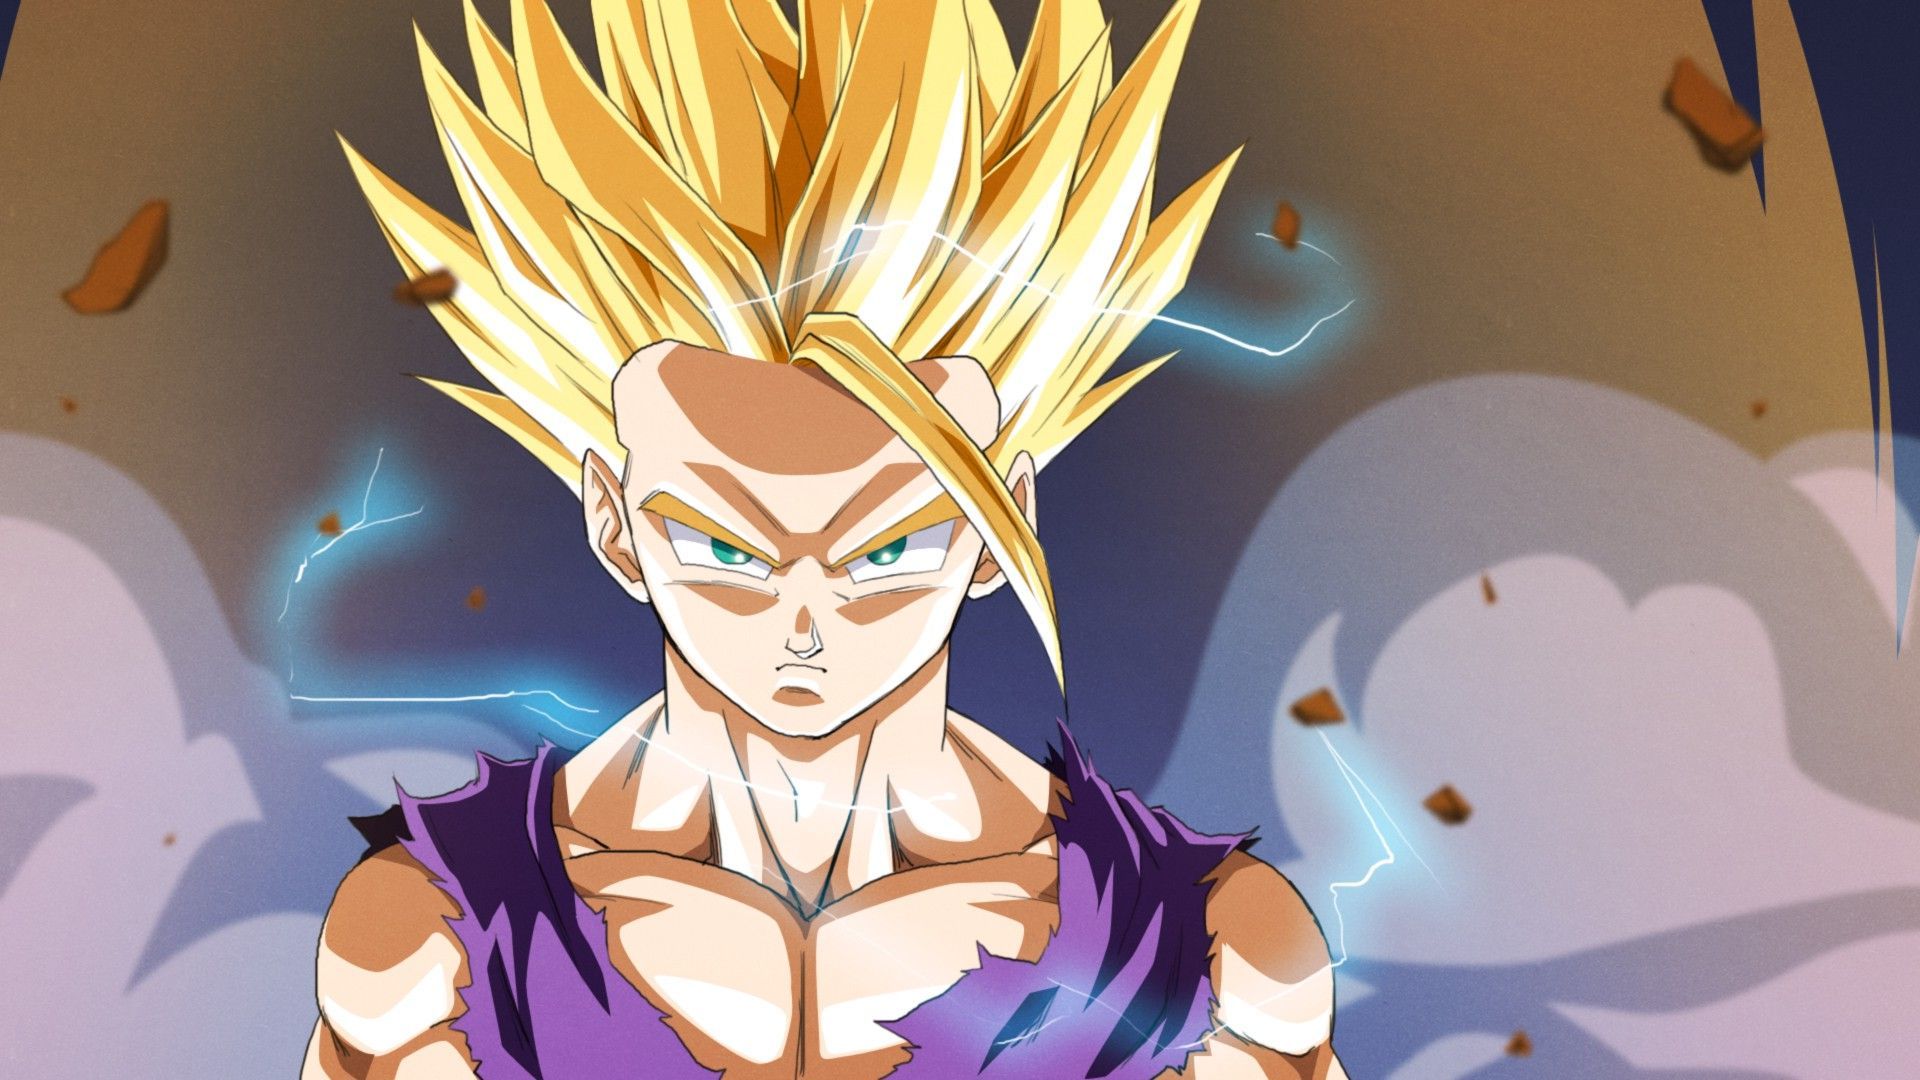 Super Saiyan Goku: Goku trong tư thế Super Saiyan chắc chắn là một trong những hình ảnh ấn tượng nhất trong Dragon Ball. Hãy cùng ngắm nhìn sức mạnh, tốc độ và khả năng chiến đấu đáng kinh ngạc của nhân vật này.